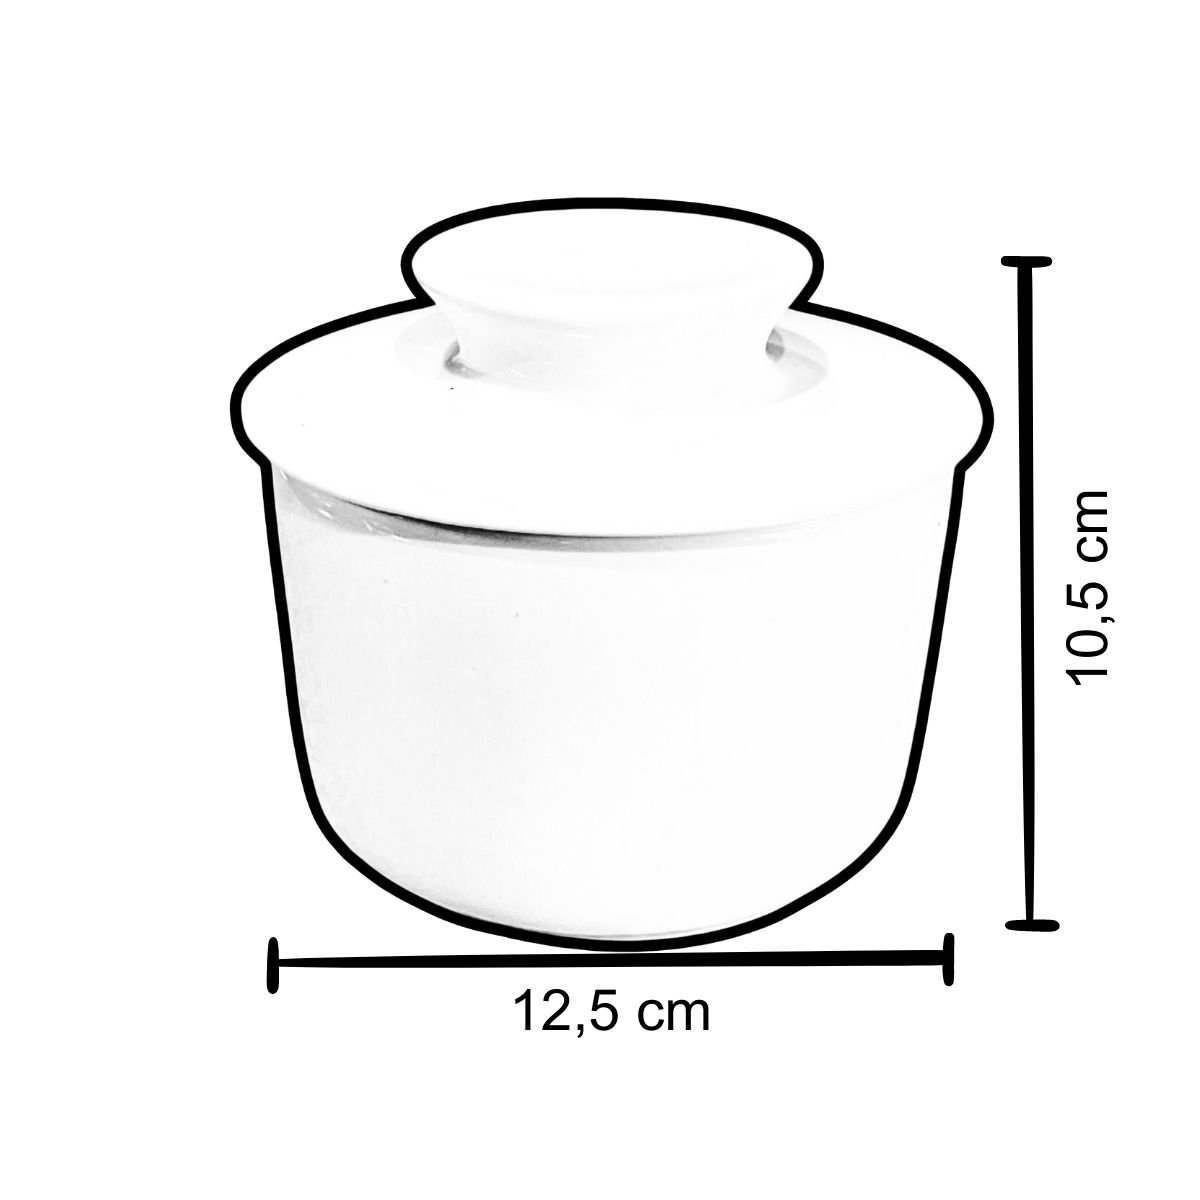 Manteigueira Francesa Porcelana Branca de Segunda Linha com Pequenos defeitos Prattos - 11